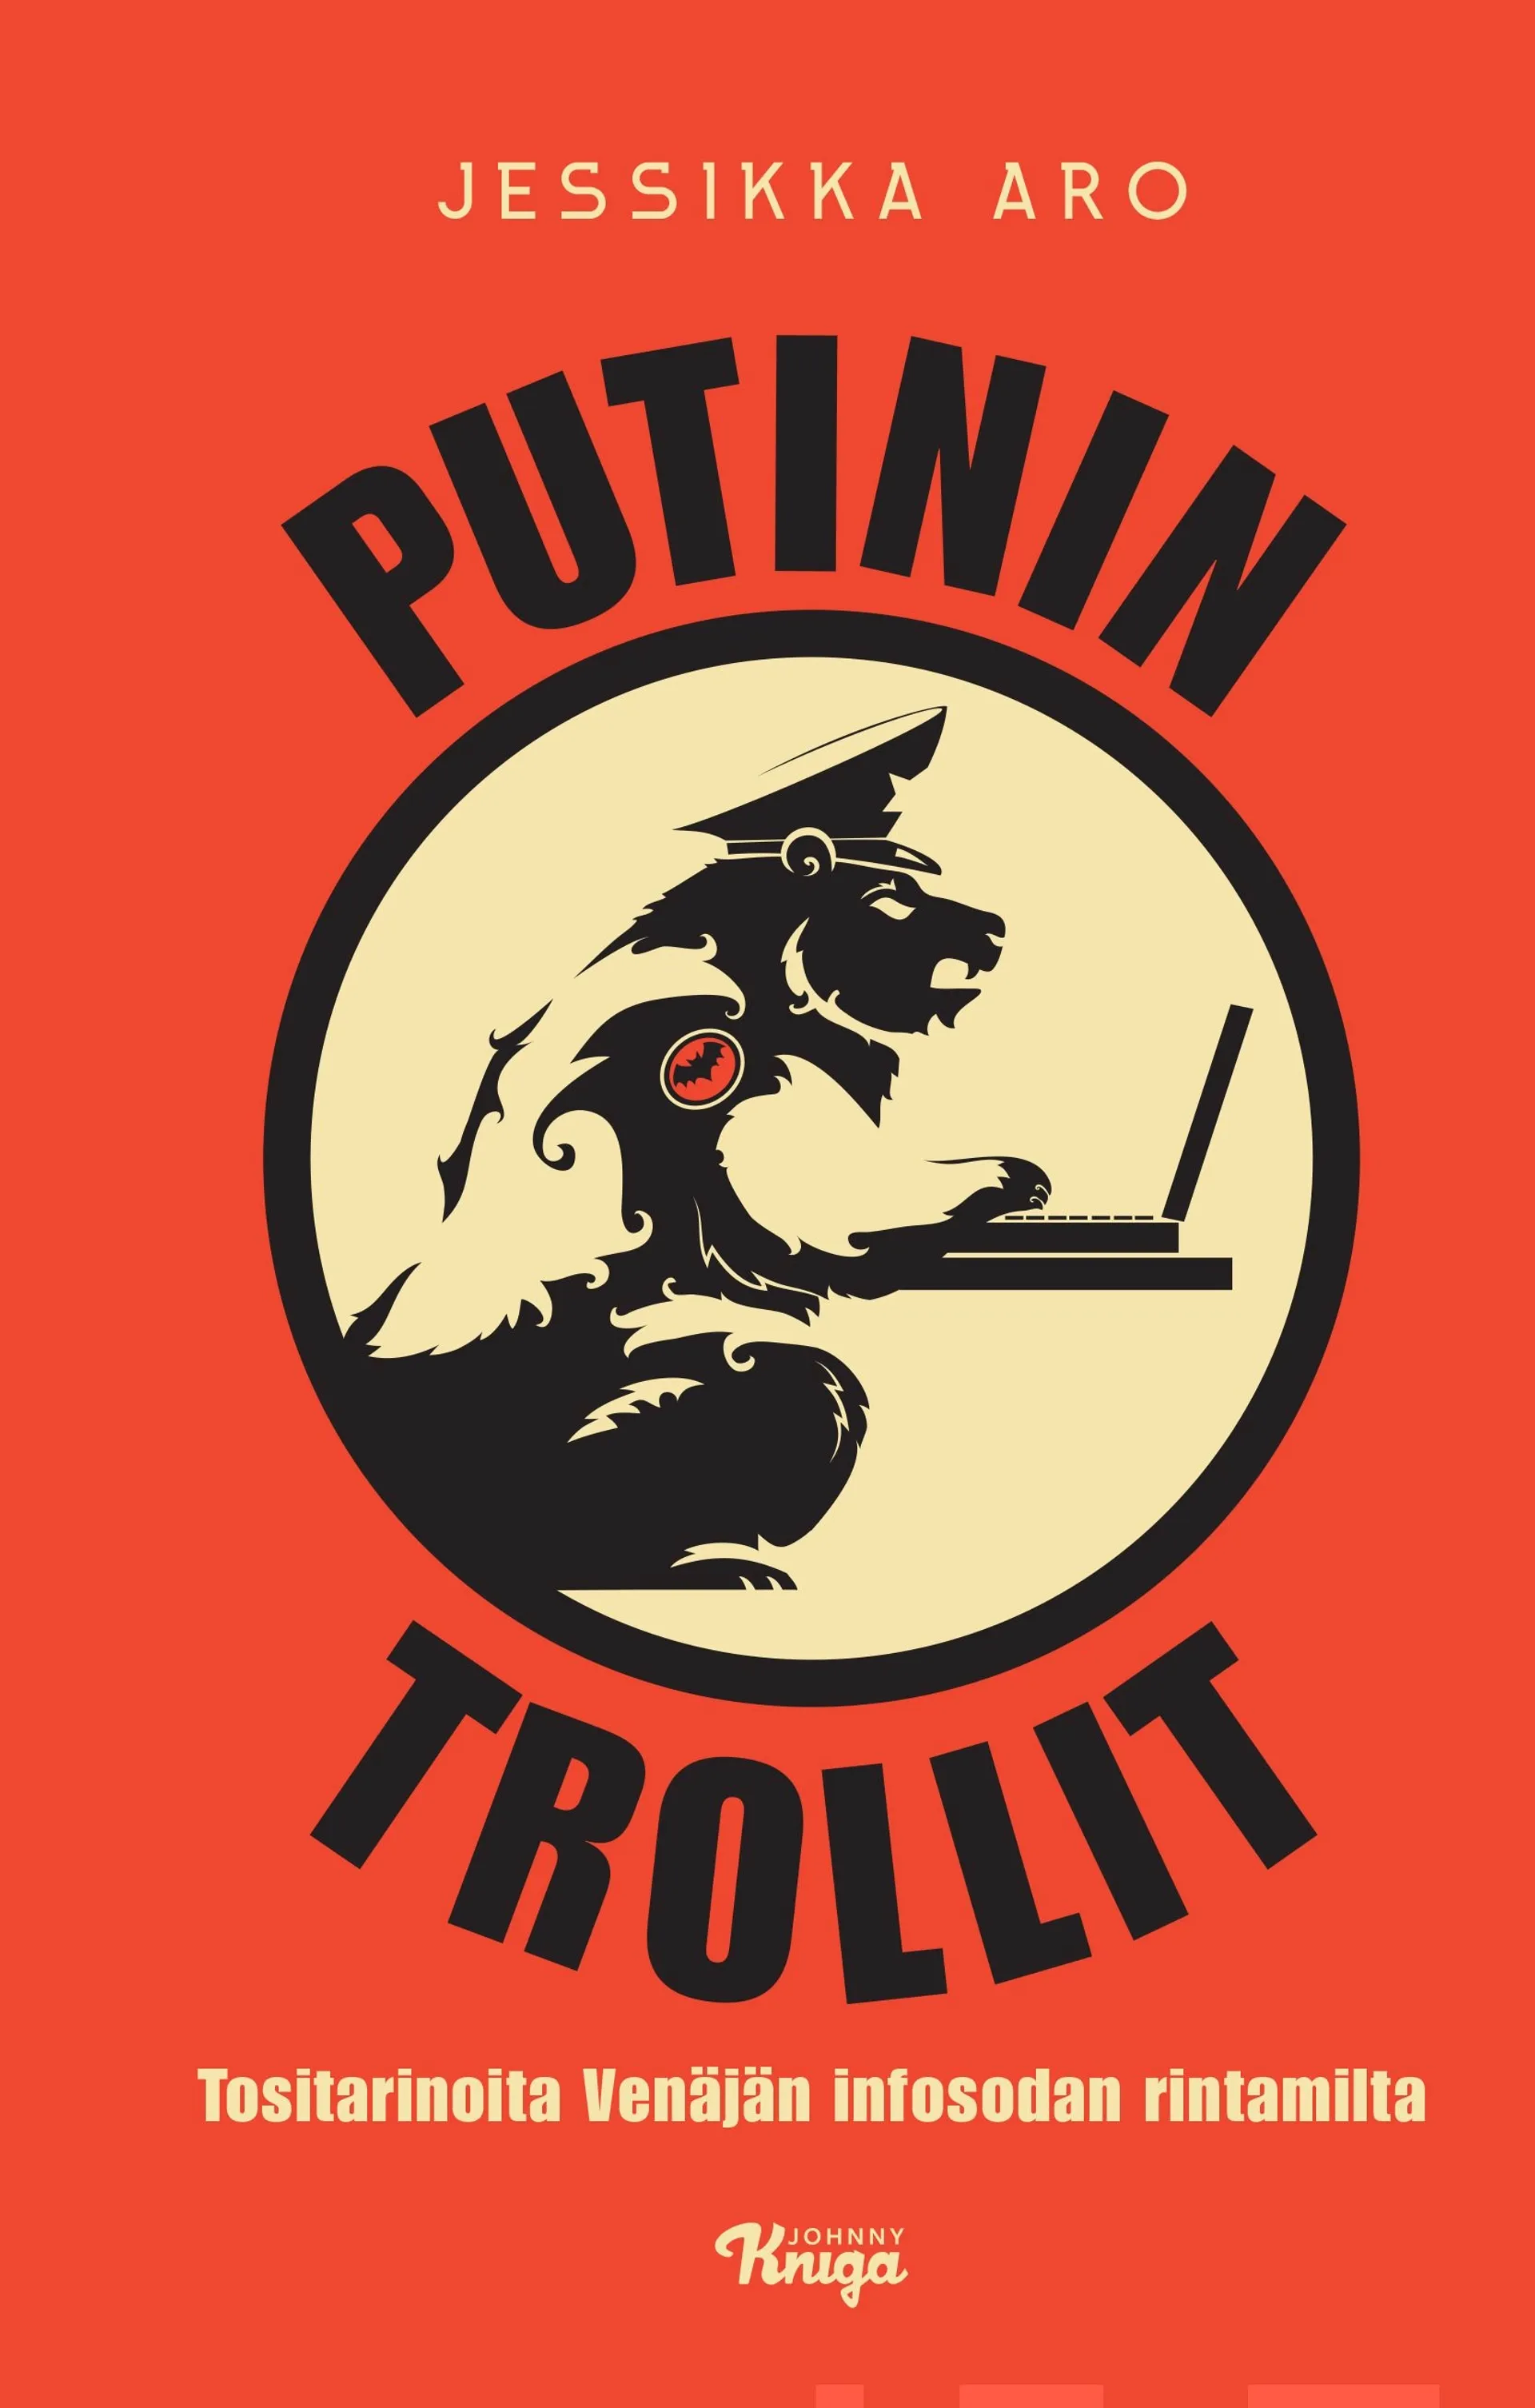 Aro, Putinin trollit